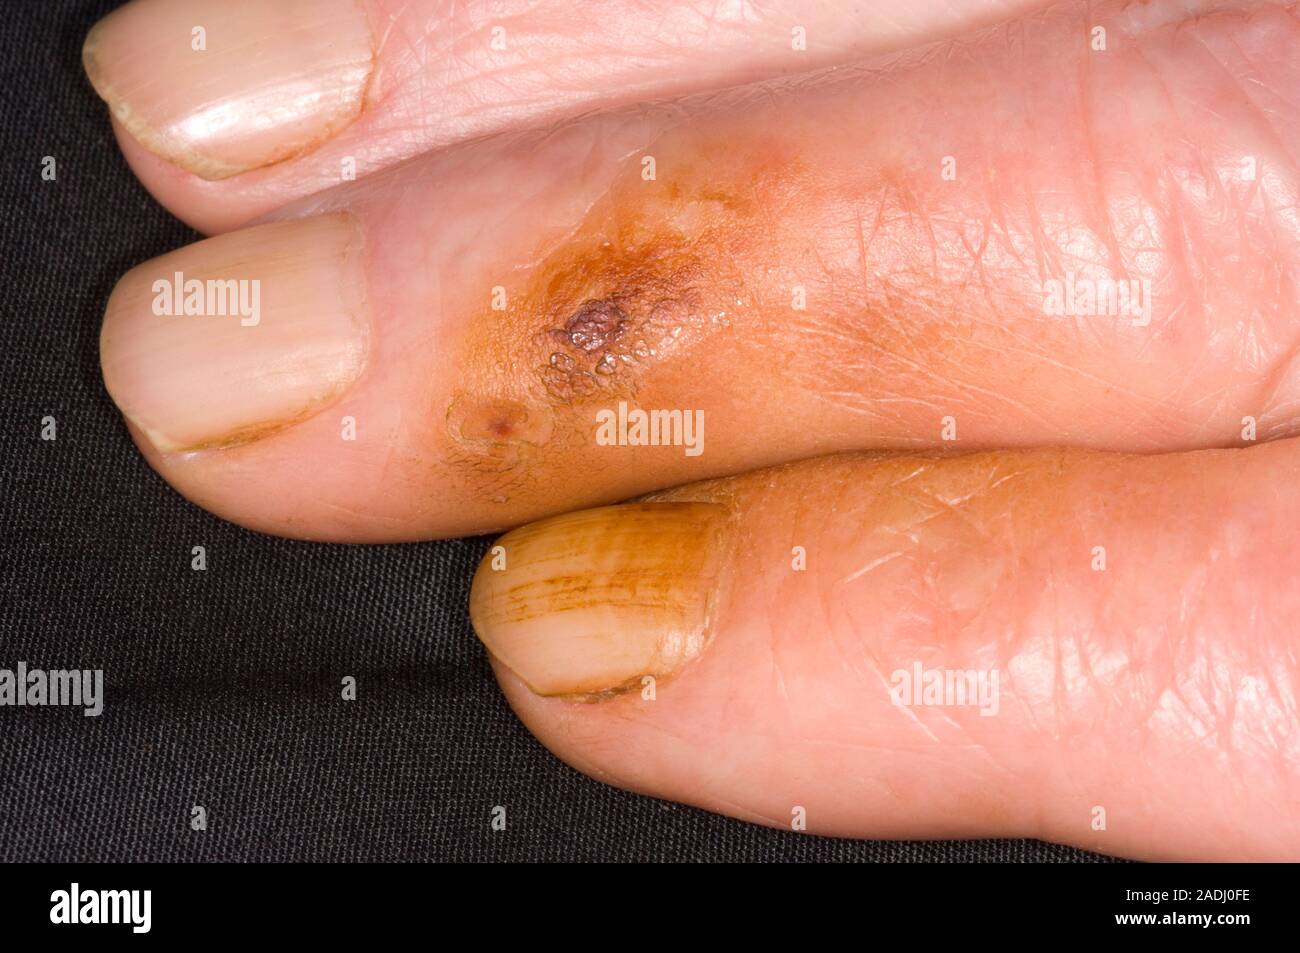 Los dedos del fumador. Mancha marrón en los dedos y uñas de un fumador de  cigarrillos. Esto es debido a la mancha de alquitrán y nicotina que se  encuentra en el tabaco